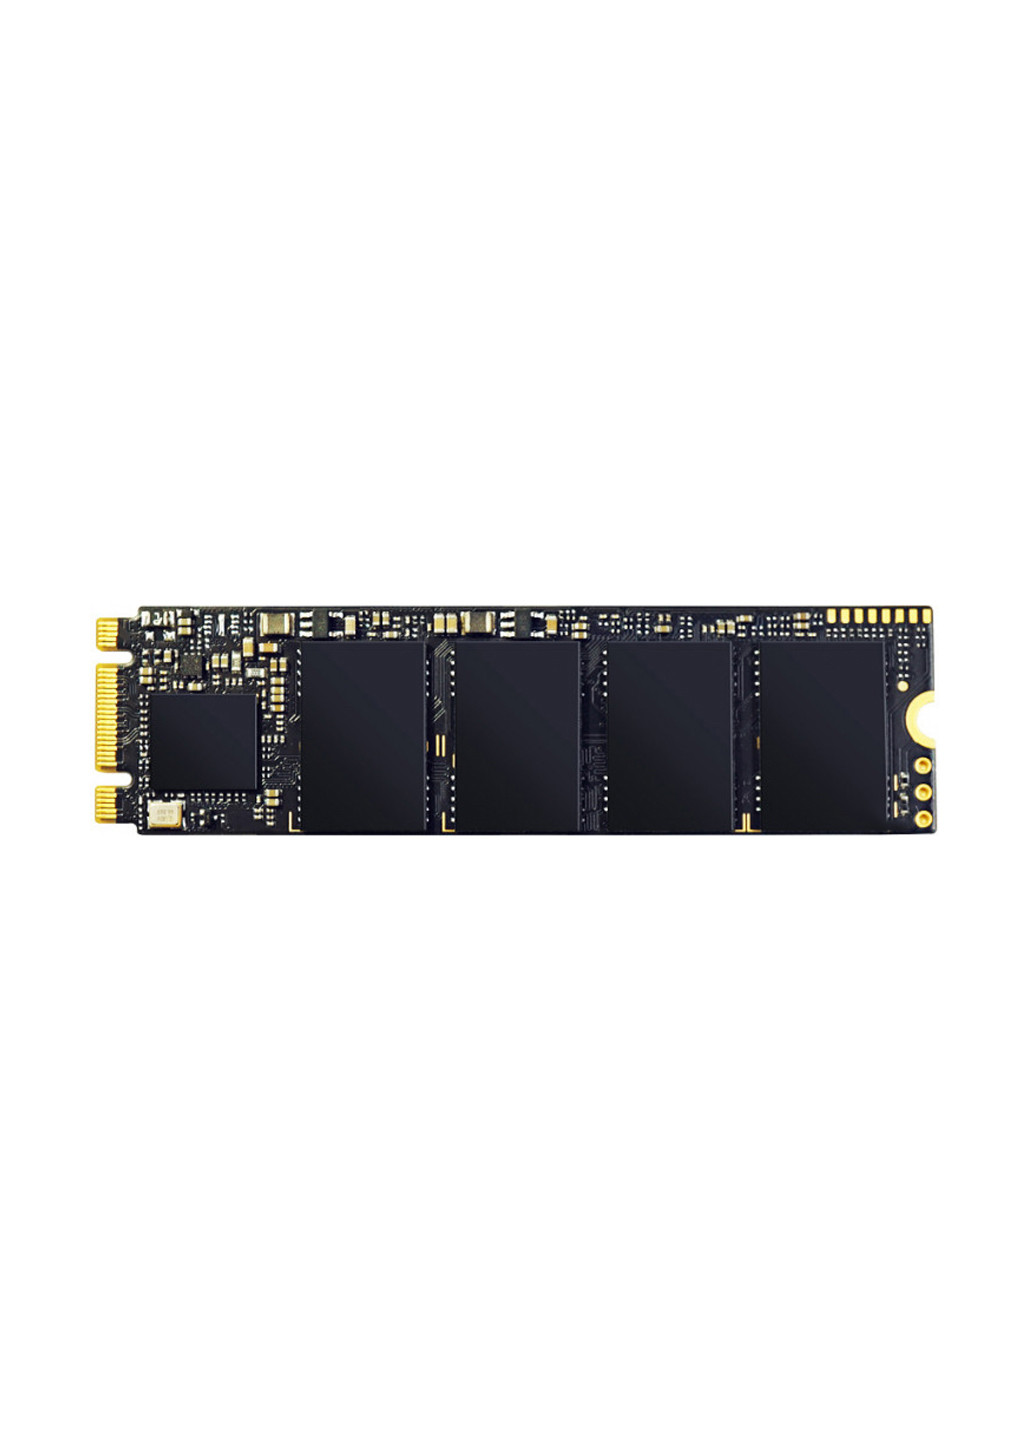 Внутрішній SSD P32A80 256GB M.2 2280 PCIe 3.0 x2 TLC (SP256GBP32A80M28) Silicon Power внутренний ssd silicon power p32a80 256gb m.2 2280 pcie 3.0 x2 tlc (sp256gbp32a80m28) (131968955)